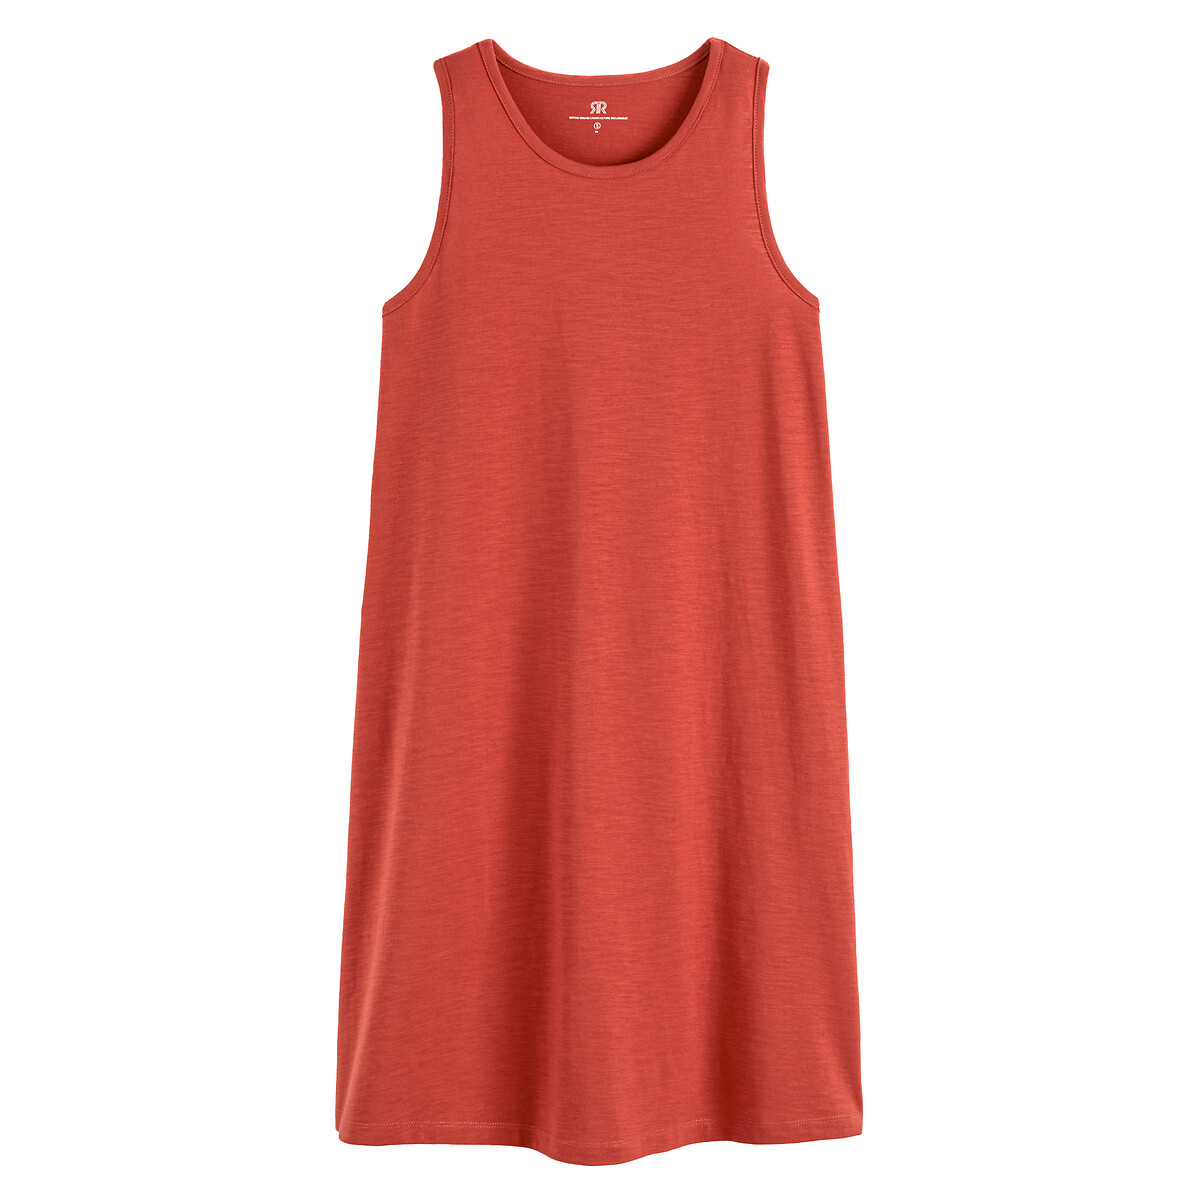 Платье Короткое без рукавов из трикотажа XL красный LaRedoute, размер XL - фото 5